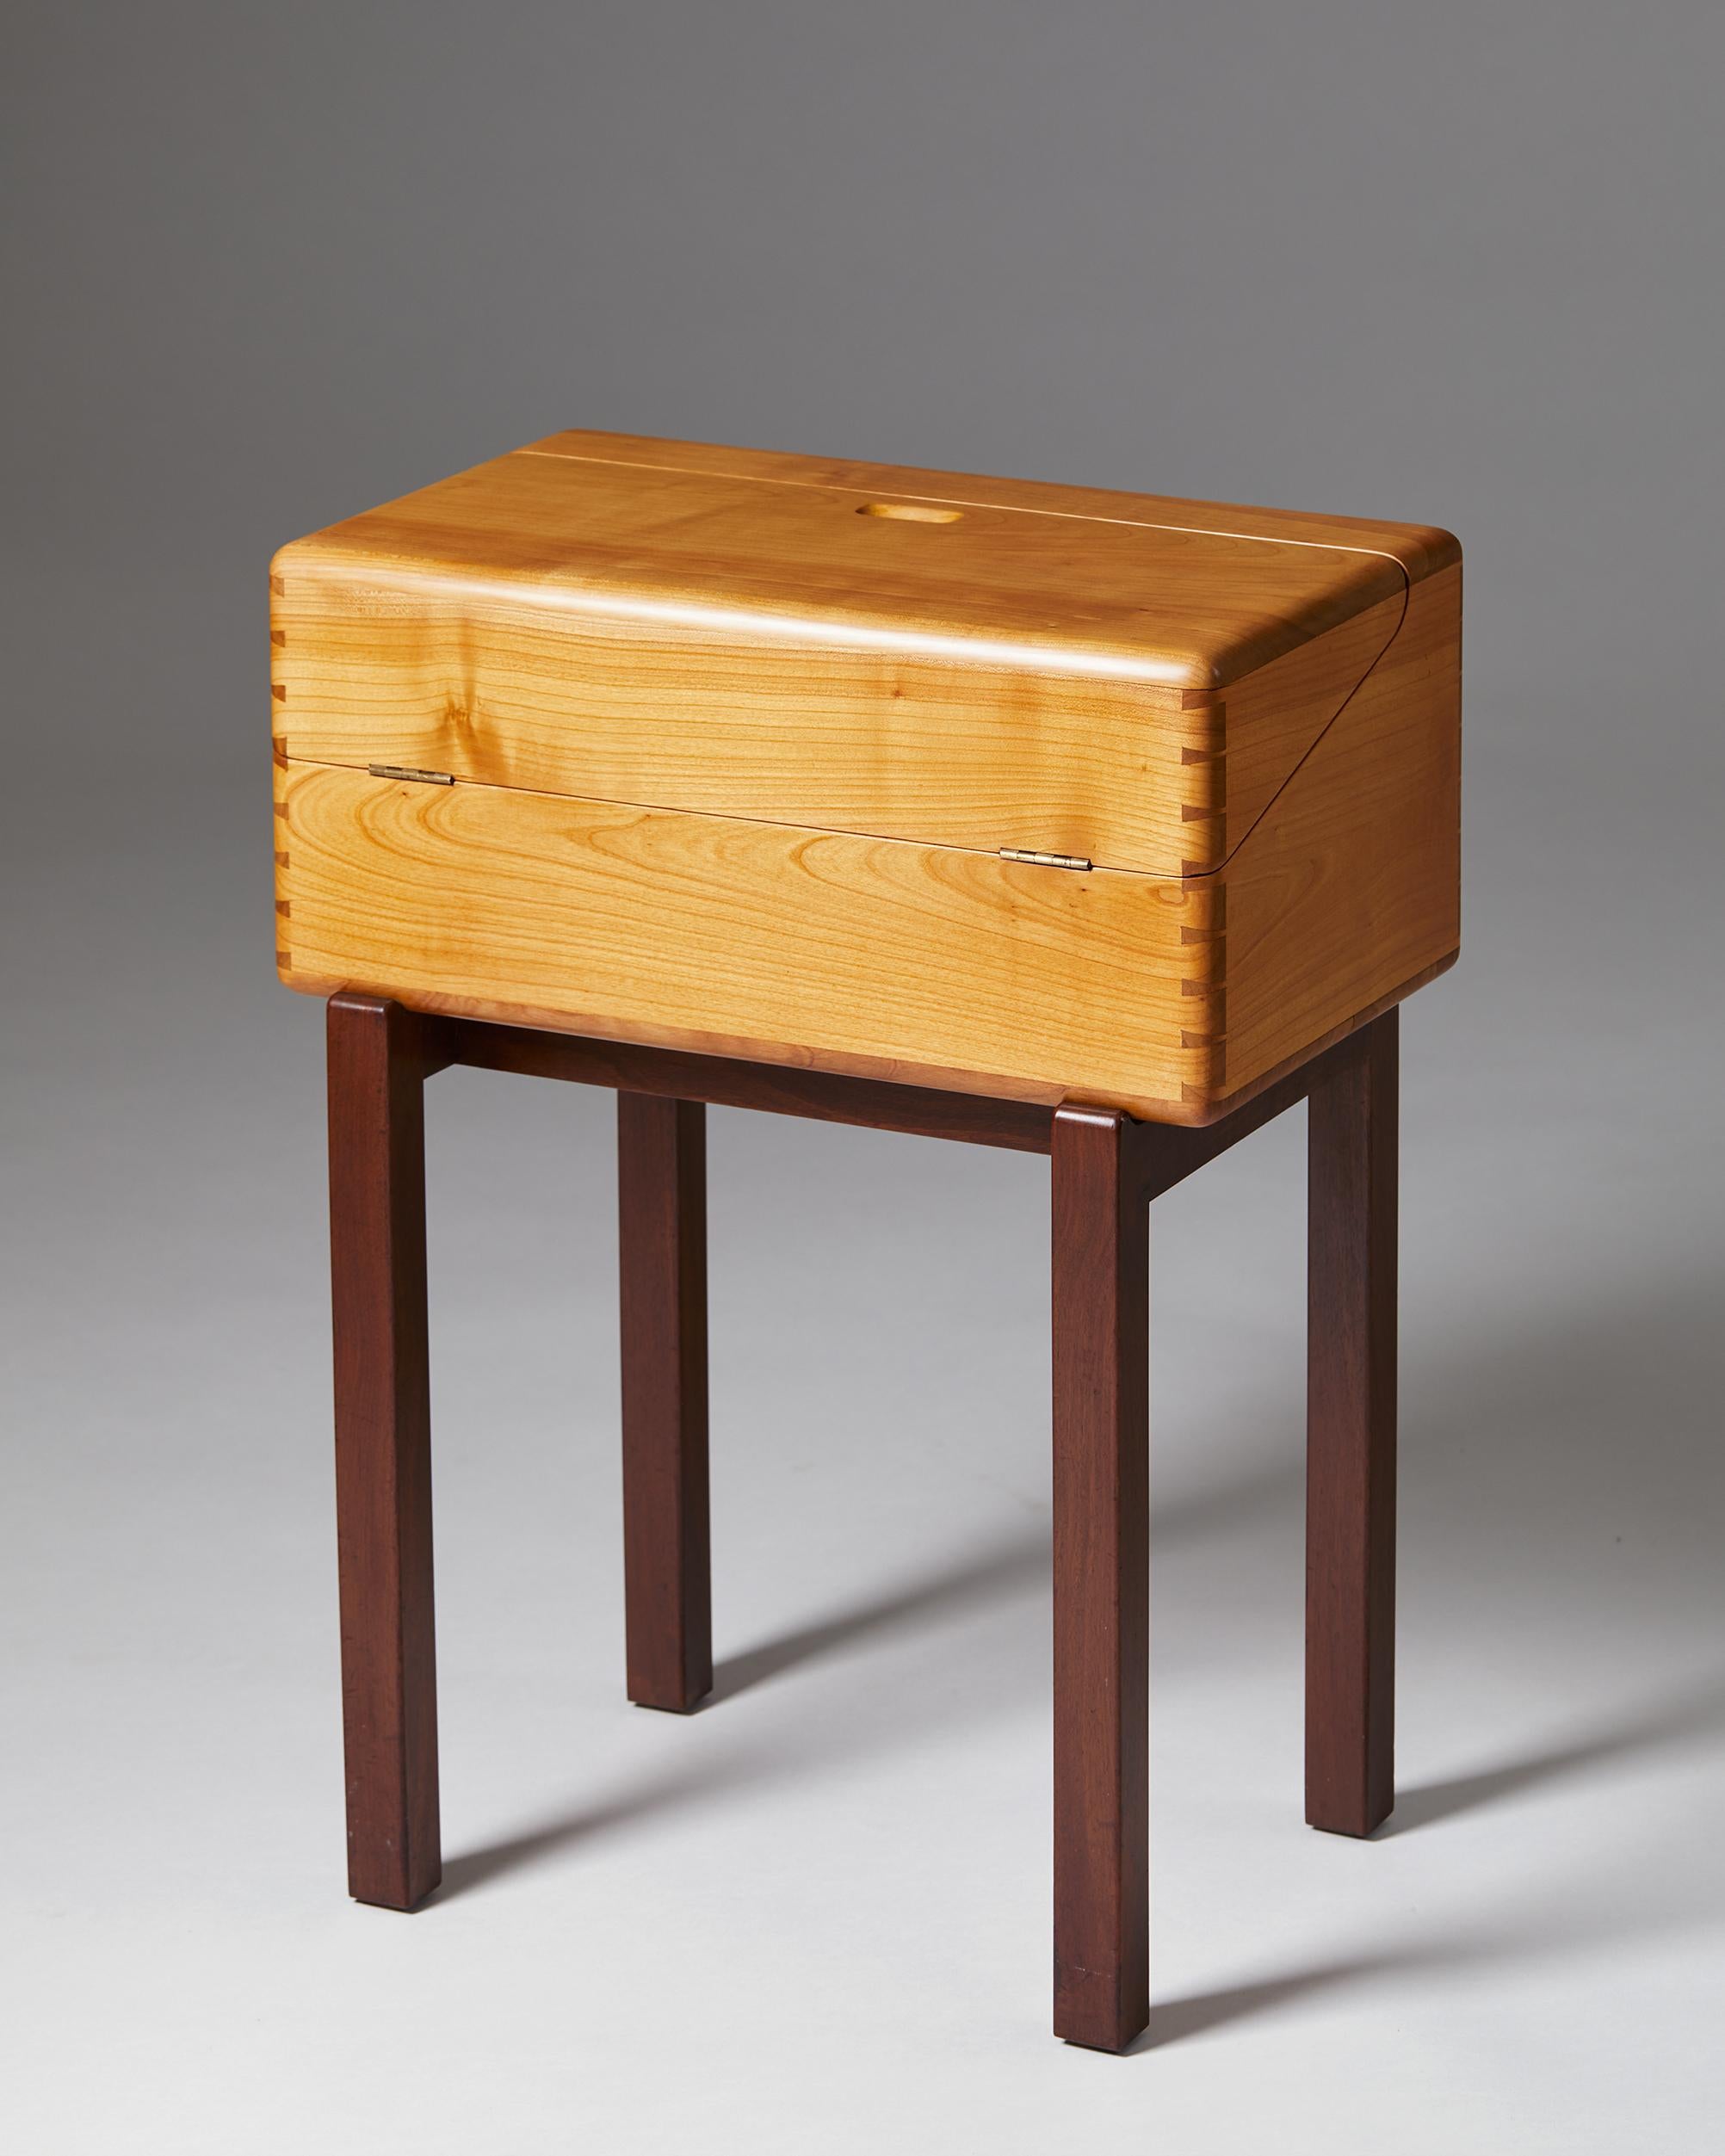 Scandinavian Modern Sewing Box Designed by Magnus L. Stephensen for Axel Søllner, Denmark, 1935